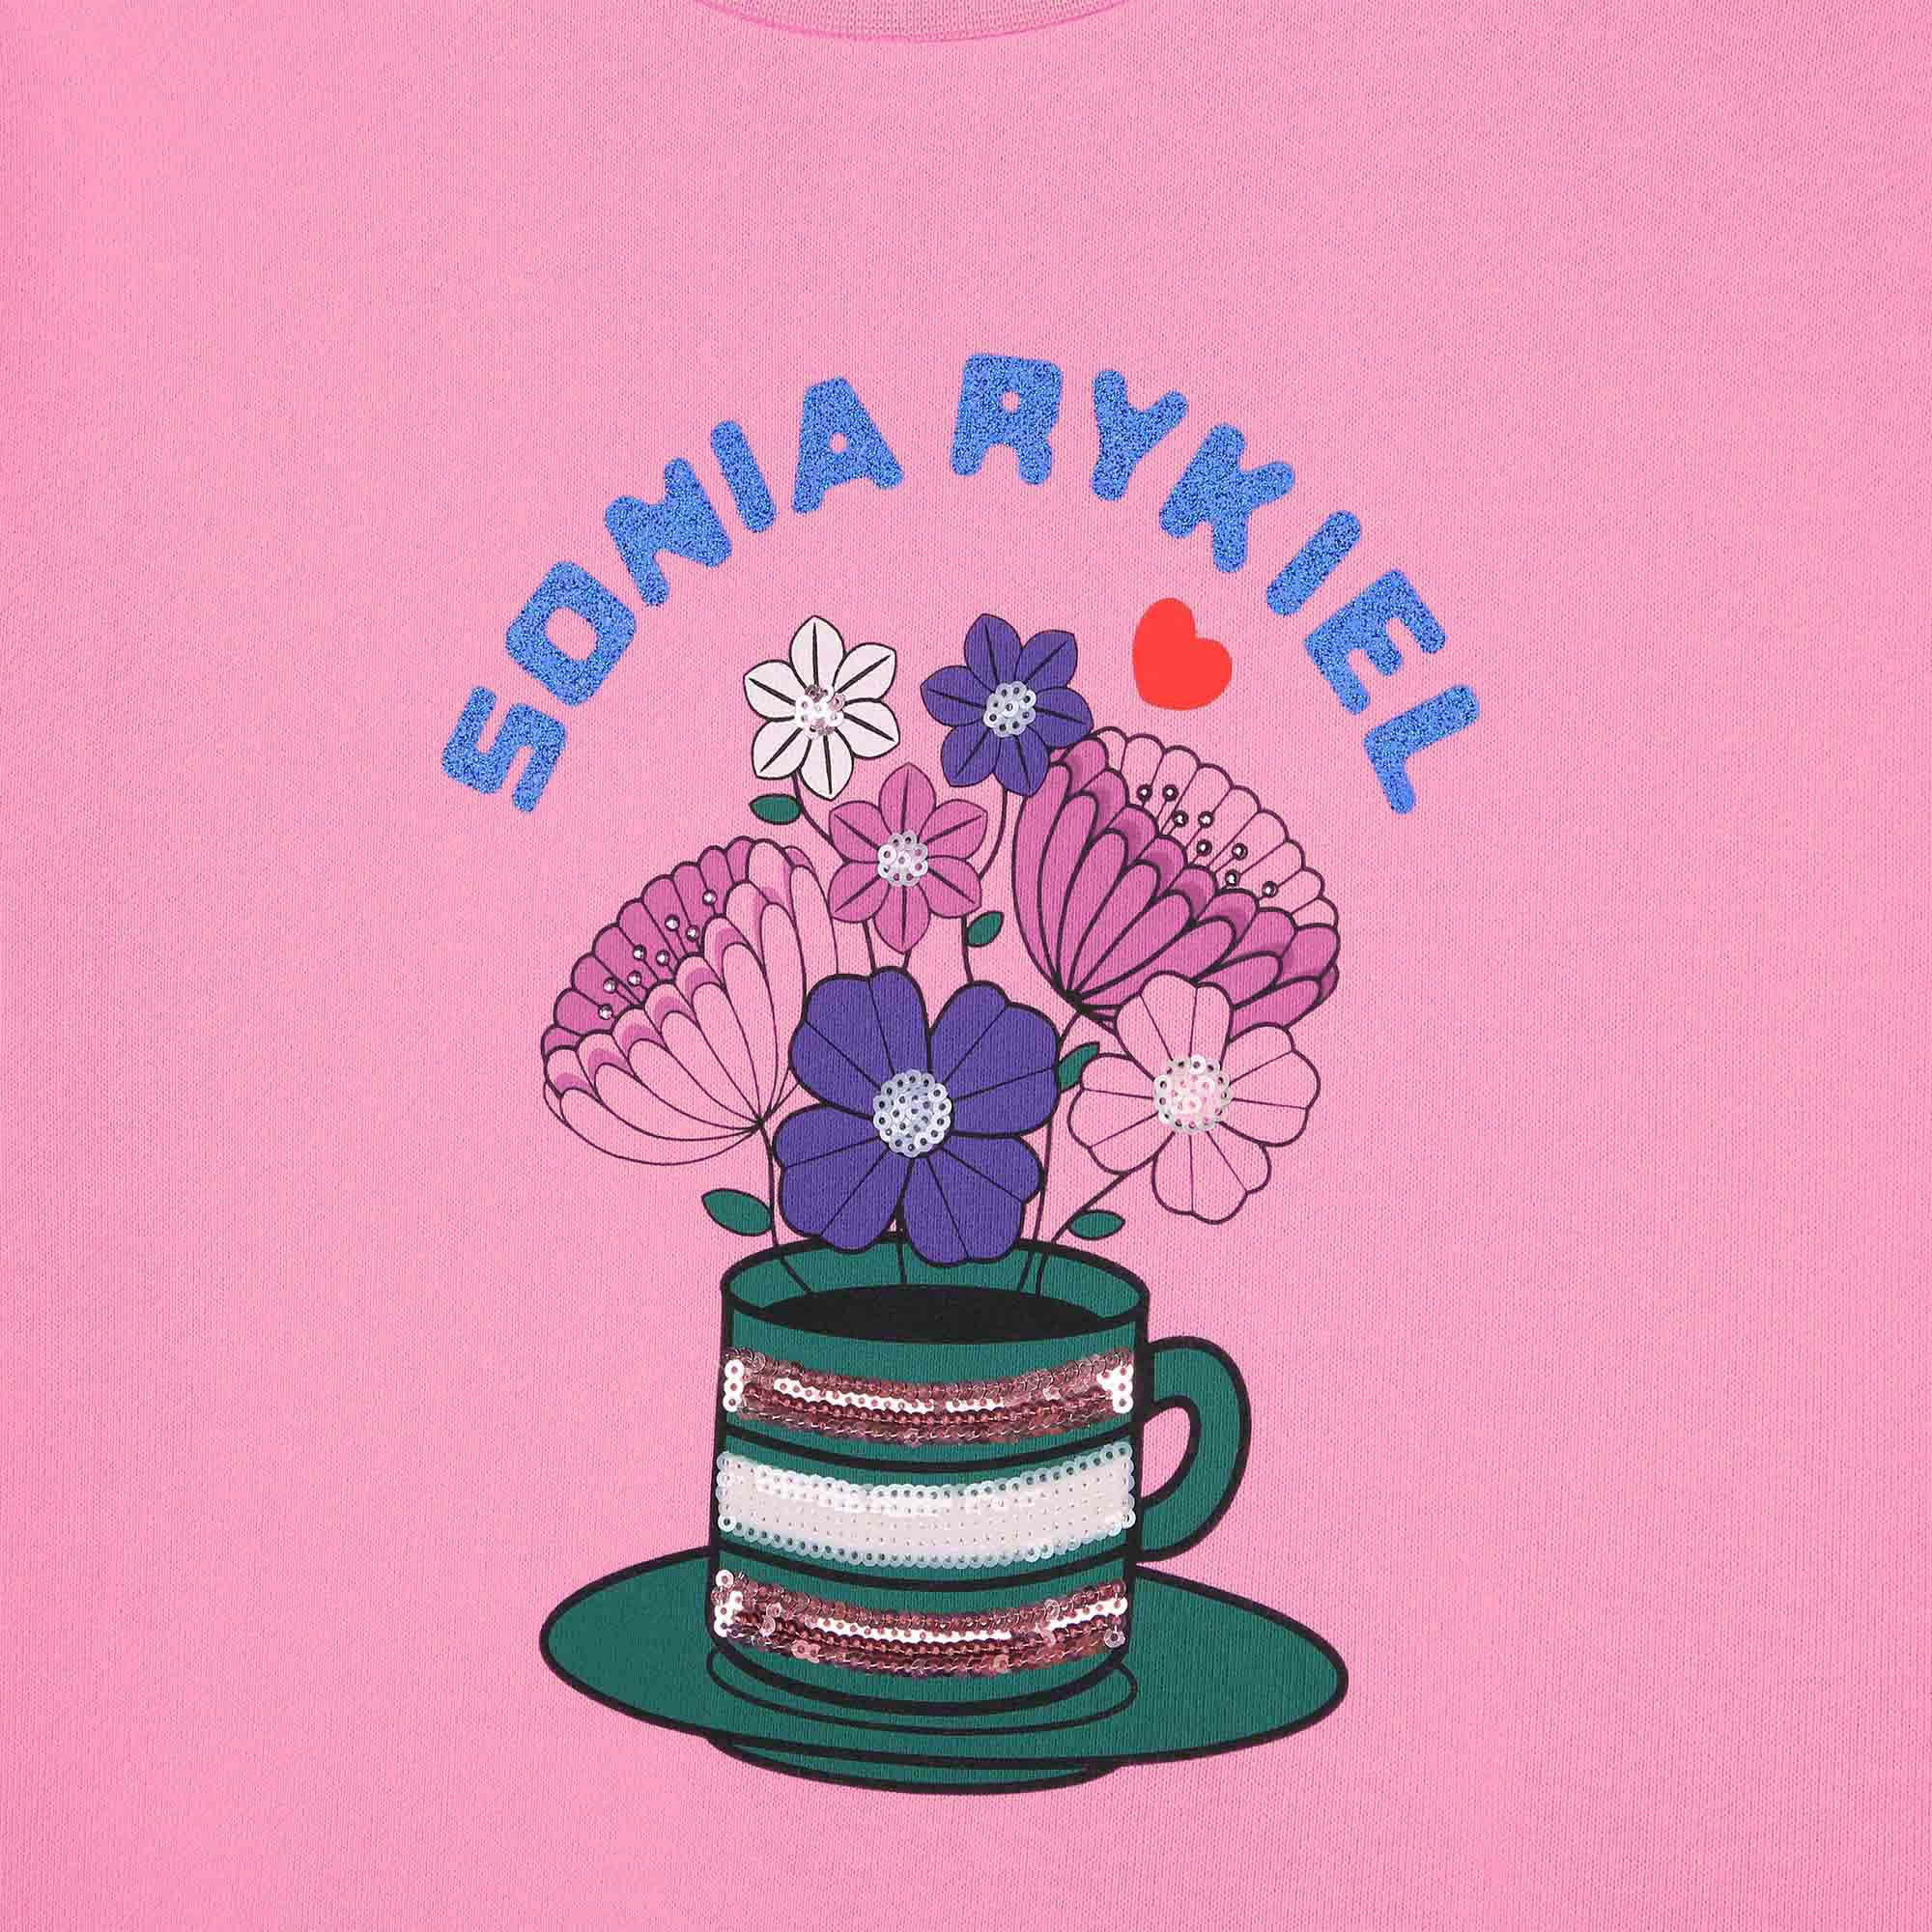 Fleece sweatshirt SONIA RYKIEL for GIRL